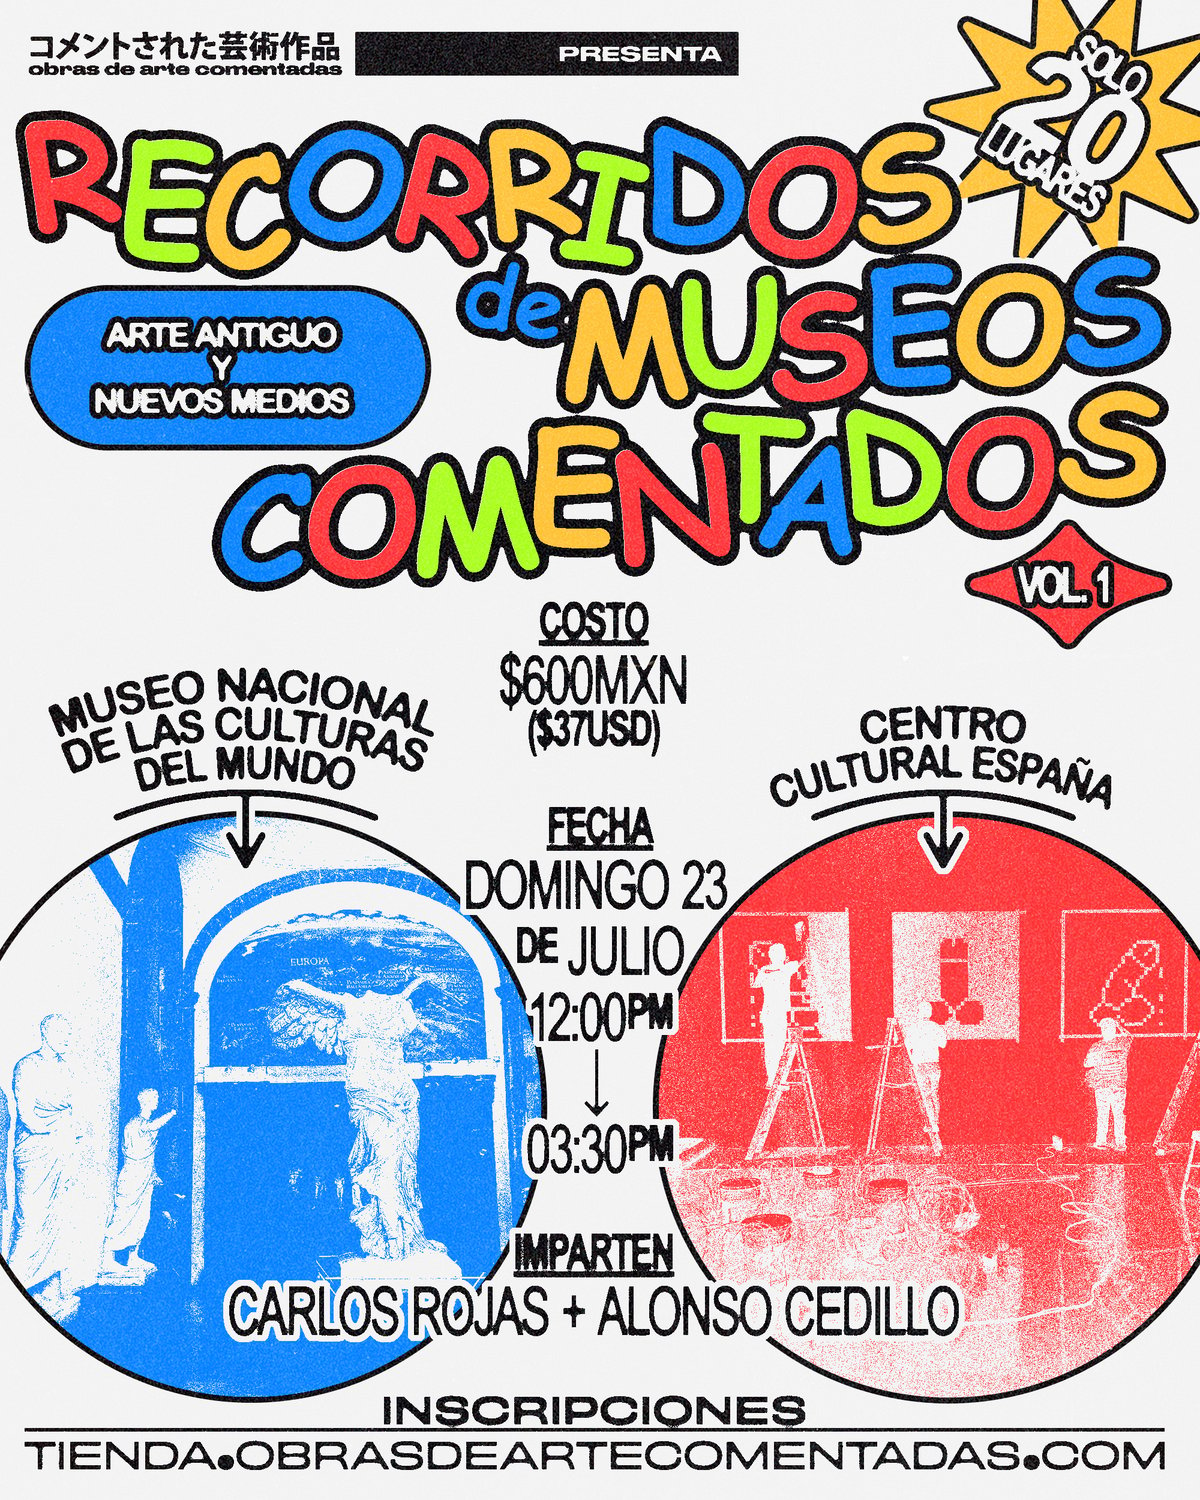 Image of Recorridos de museos comentados vol.I: Arte Antiguo y Nuevos Medios